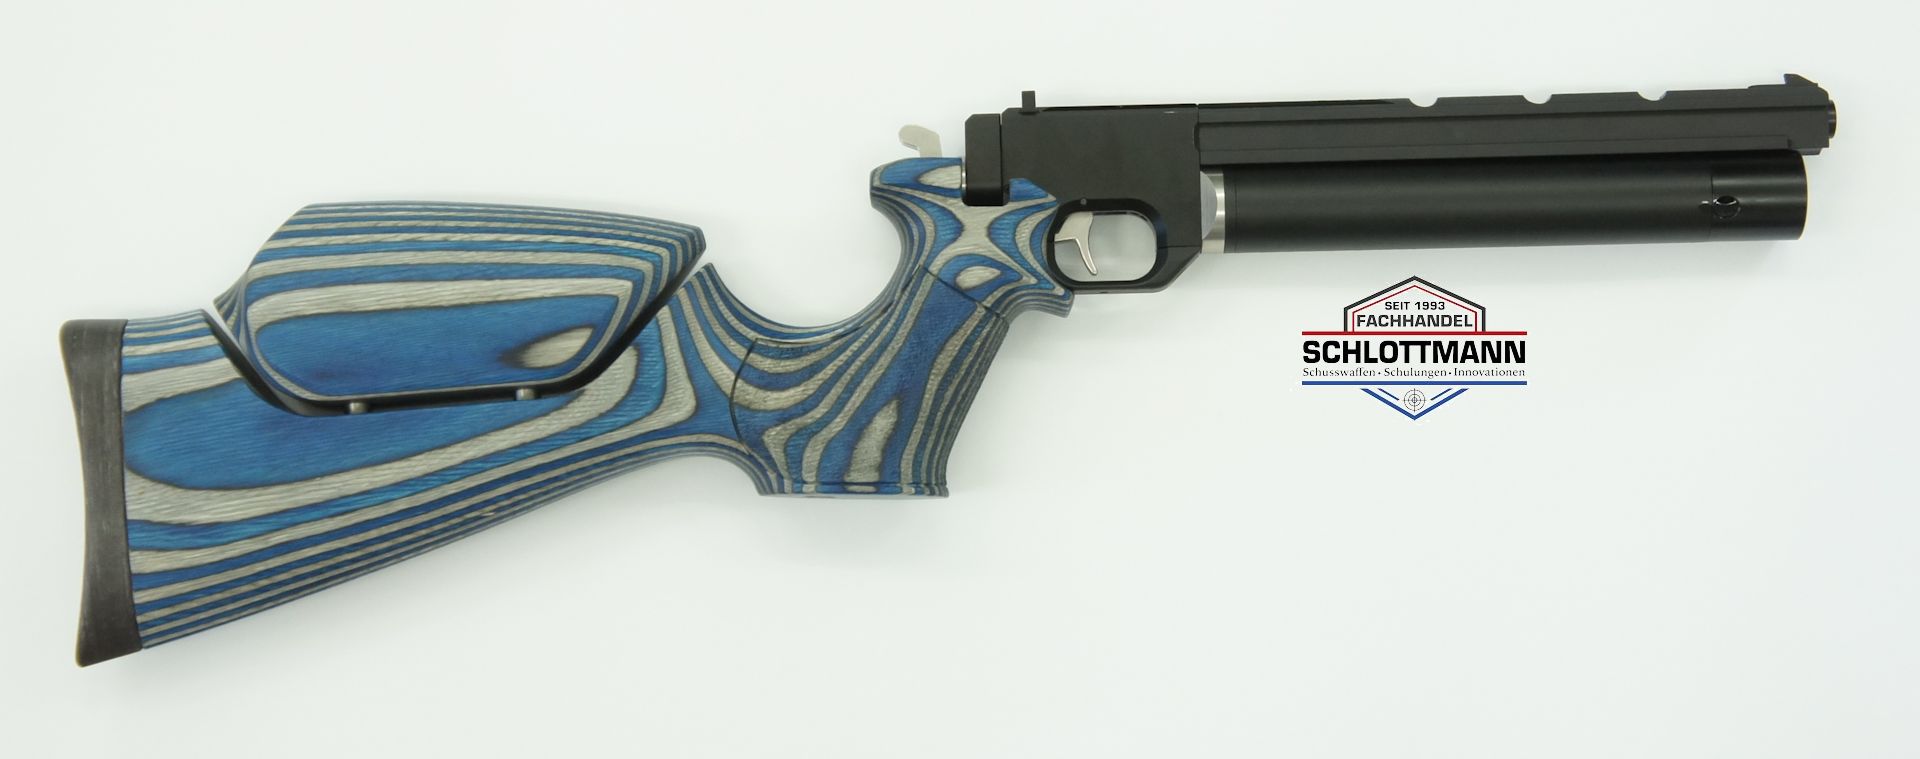 Pistolenkarabiner auf Basis der Luftpistole airmaX PP700S-A könnten Sie auch gerne in anderen Schaftfarben bekommen